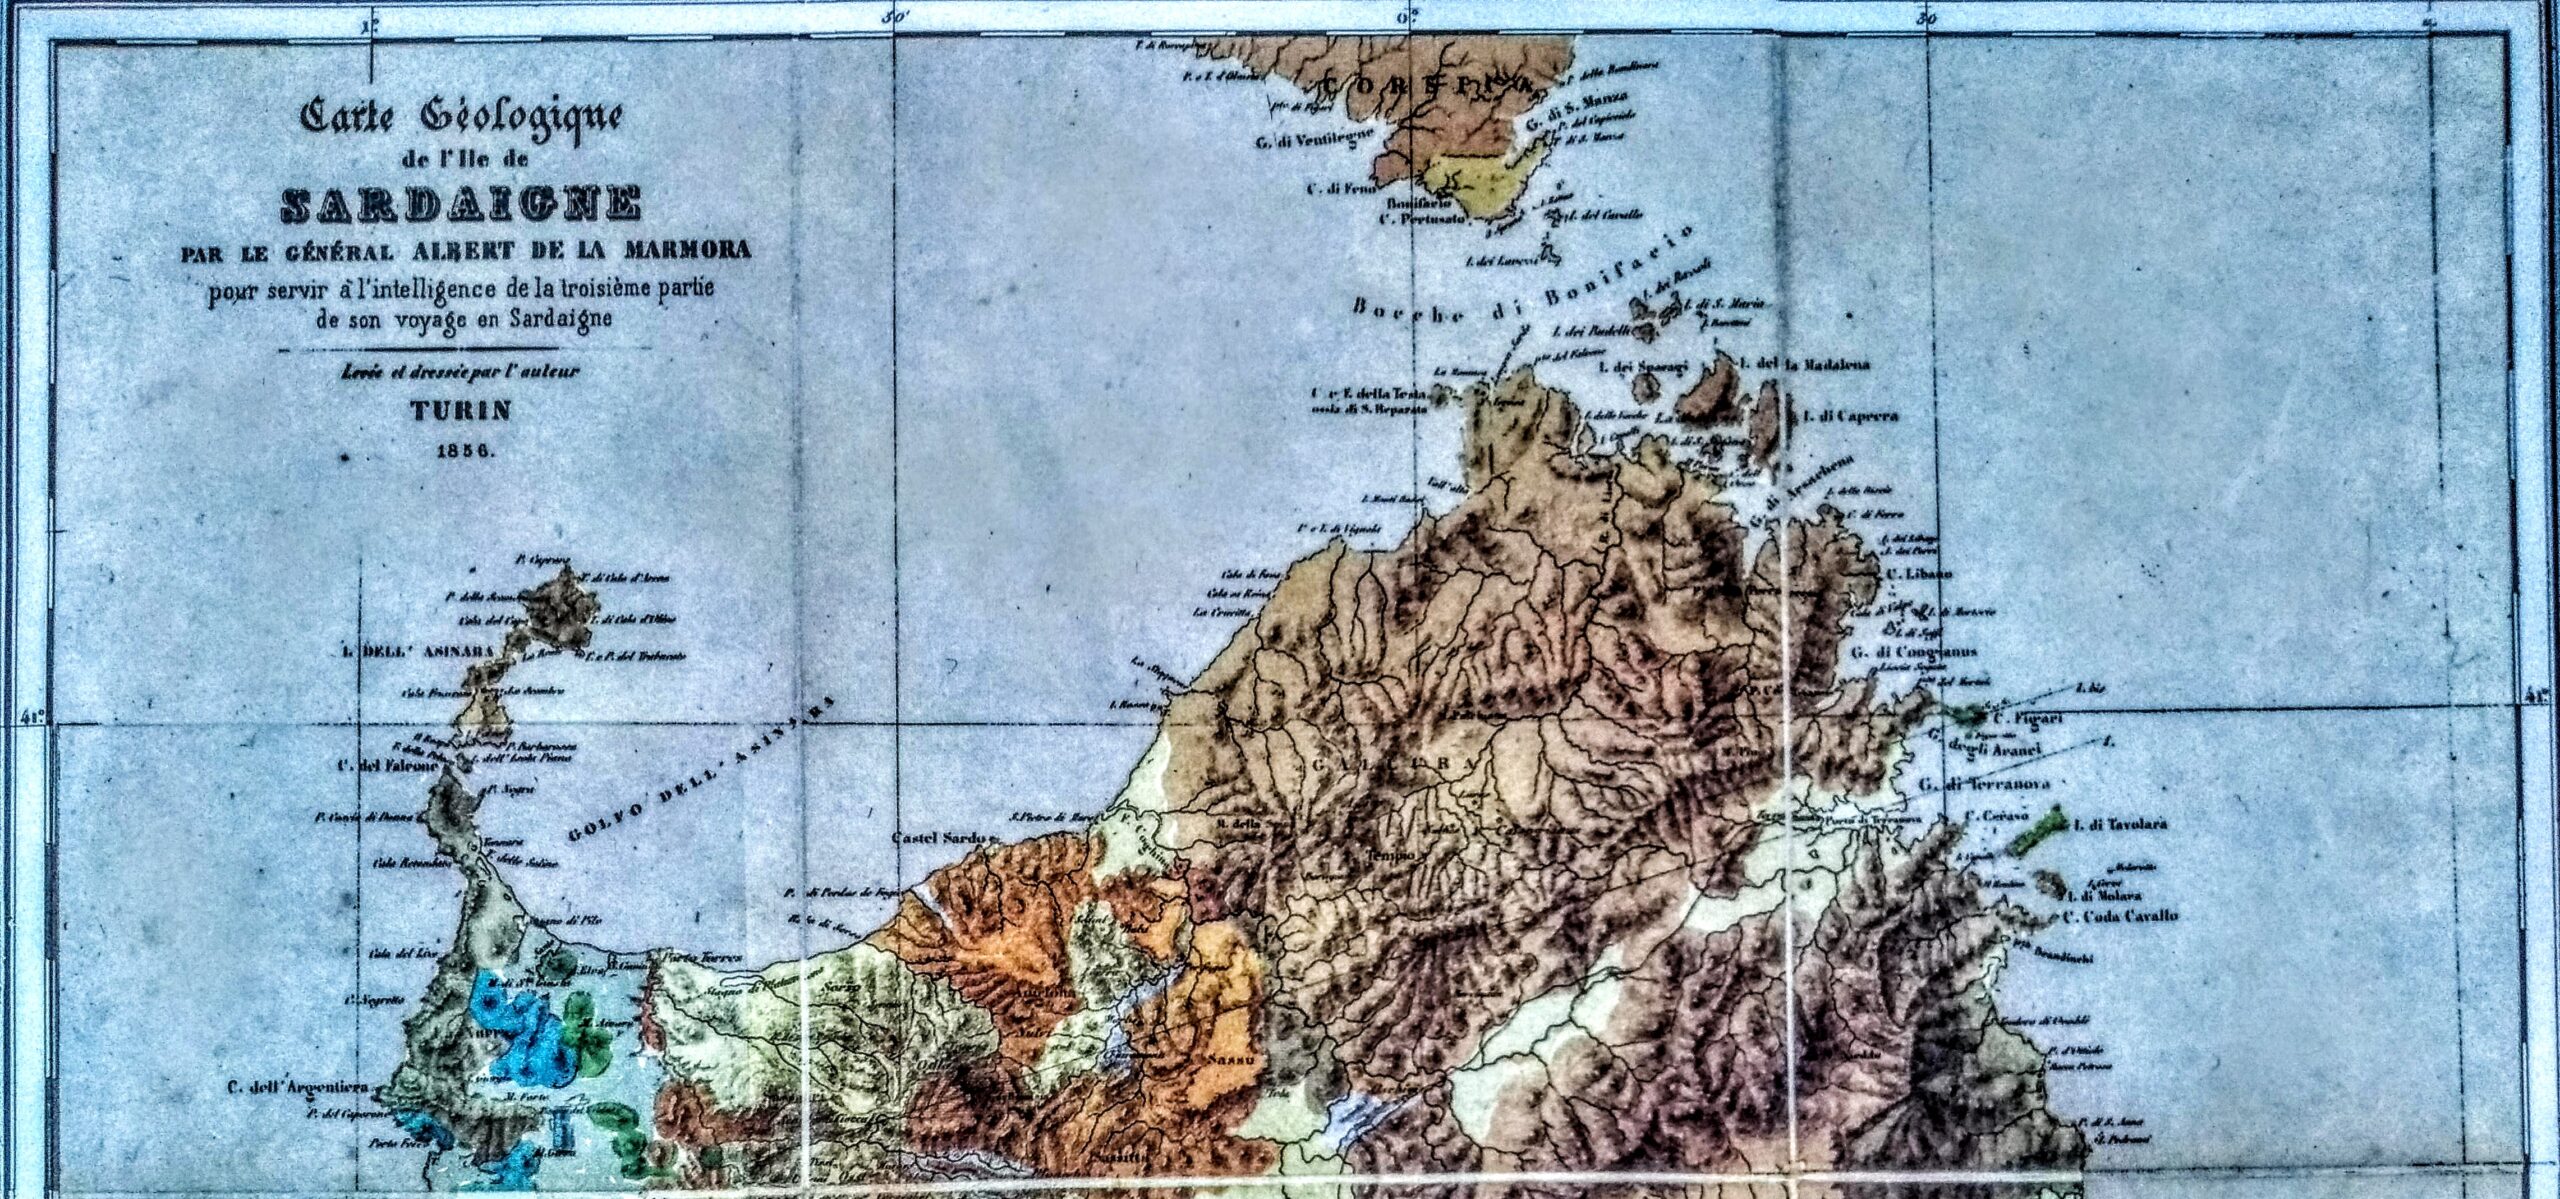 La Marmora, prima carta geologica della Sardegna,1856 